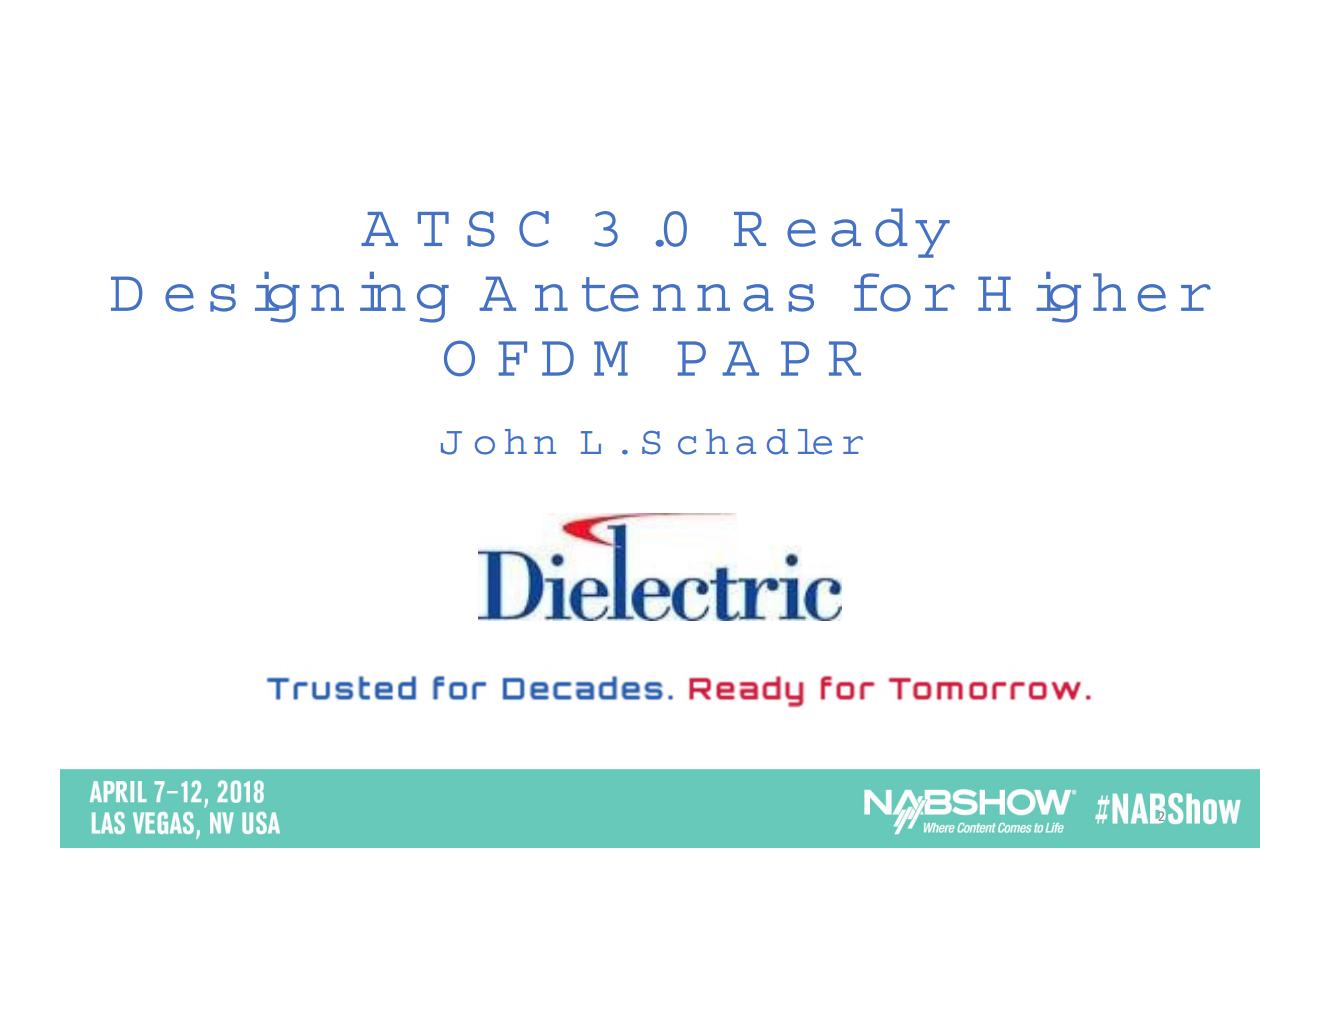 ATSC 3 Design higher PAPR